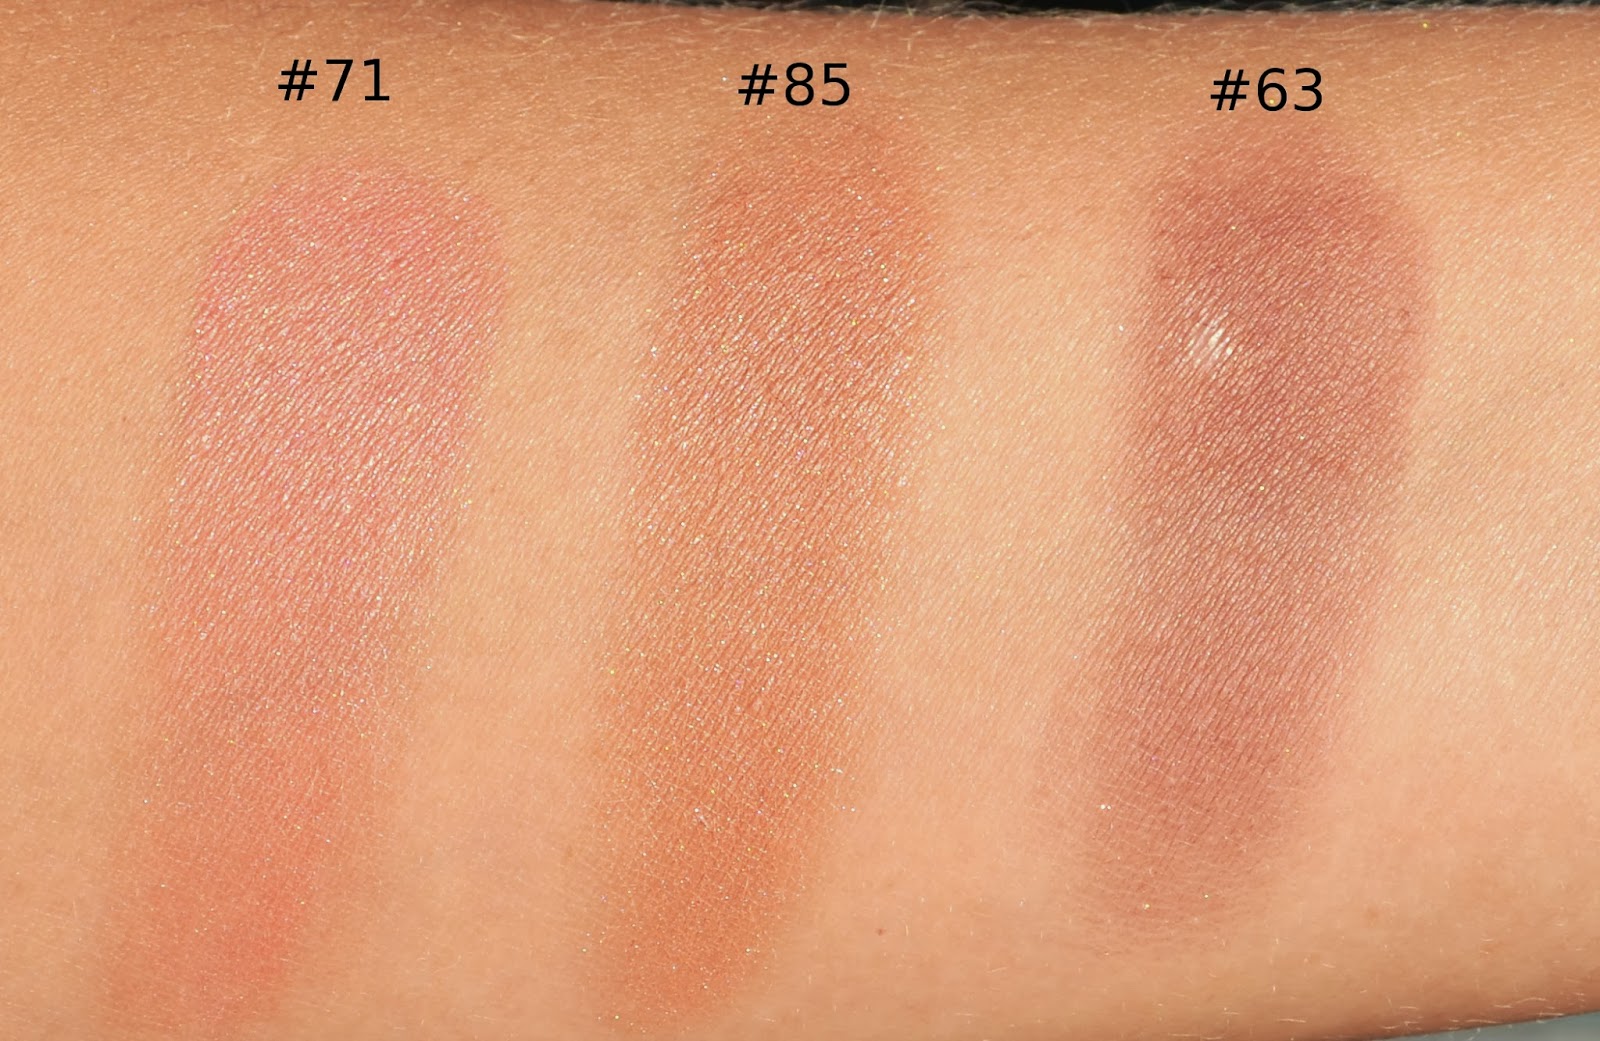 Chanel Joues Contraste Powder Blush #85 Evocation Comparisons